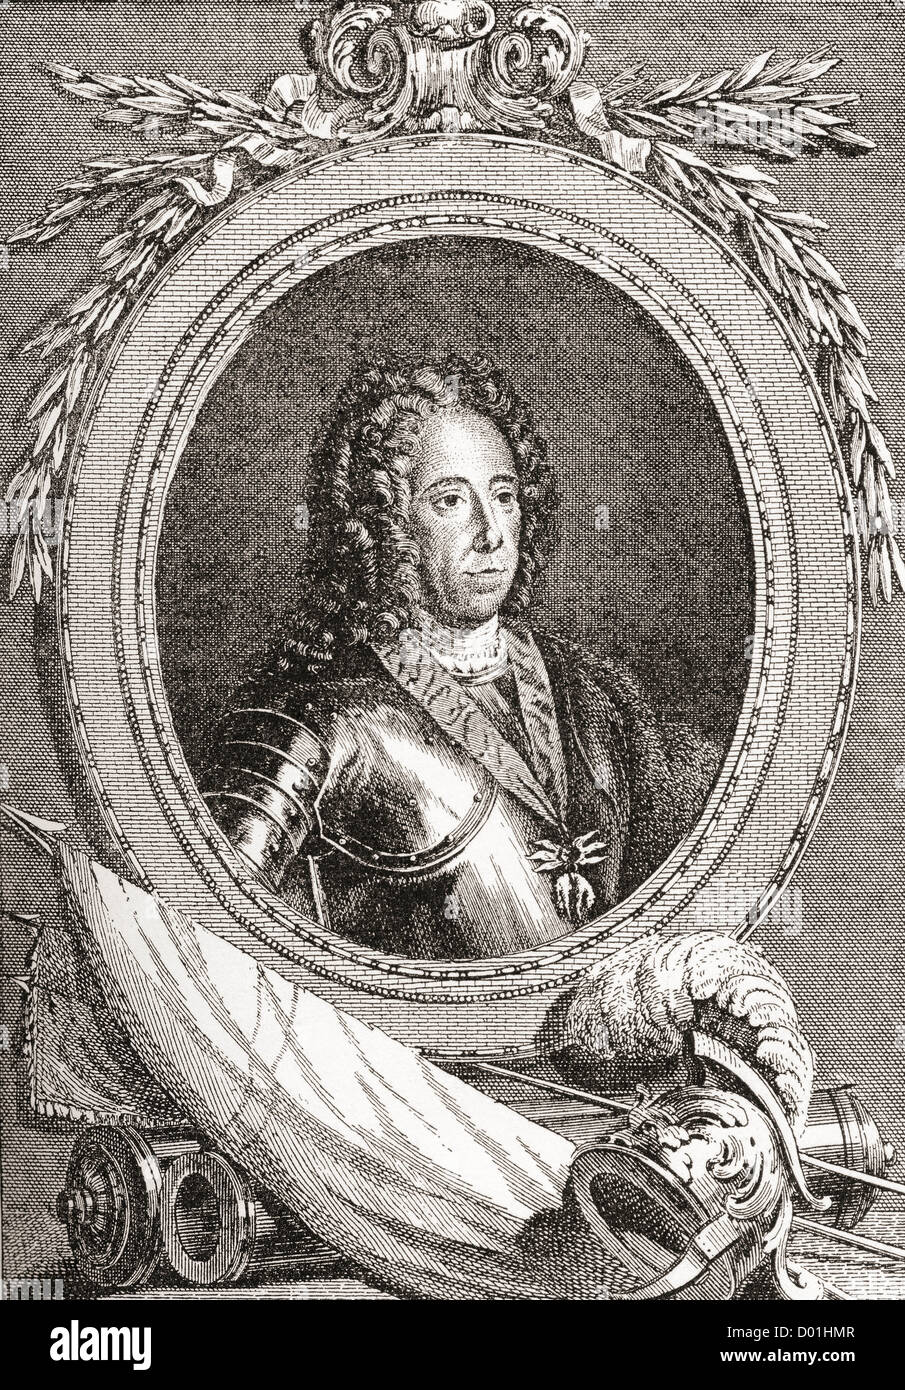 Le prince Eugène de Savoie, 1663 - 1736. Le commandant de l'armée française. Banque D'Images